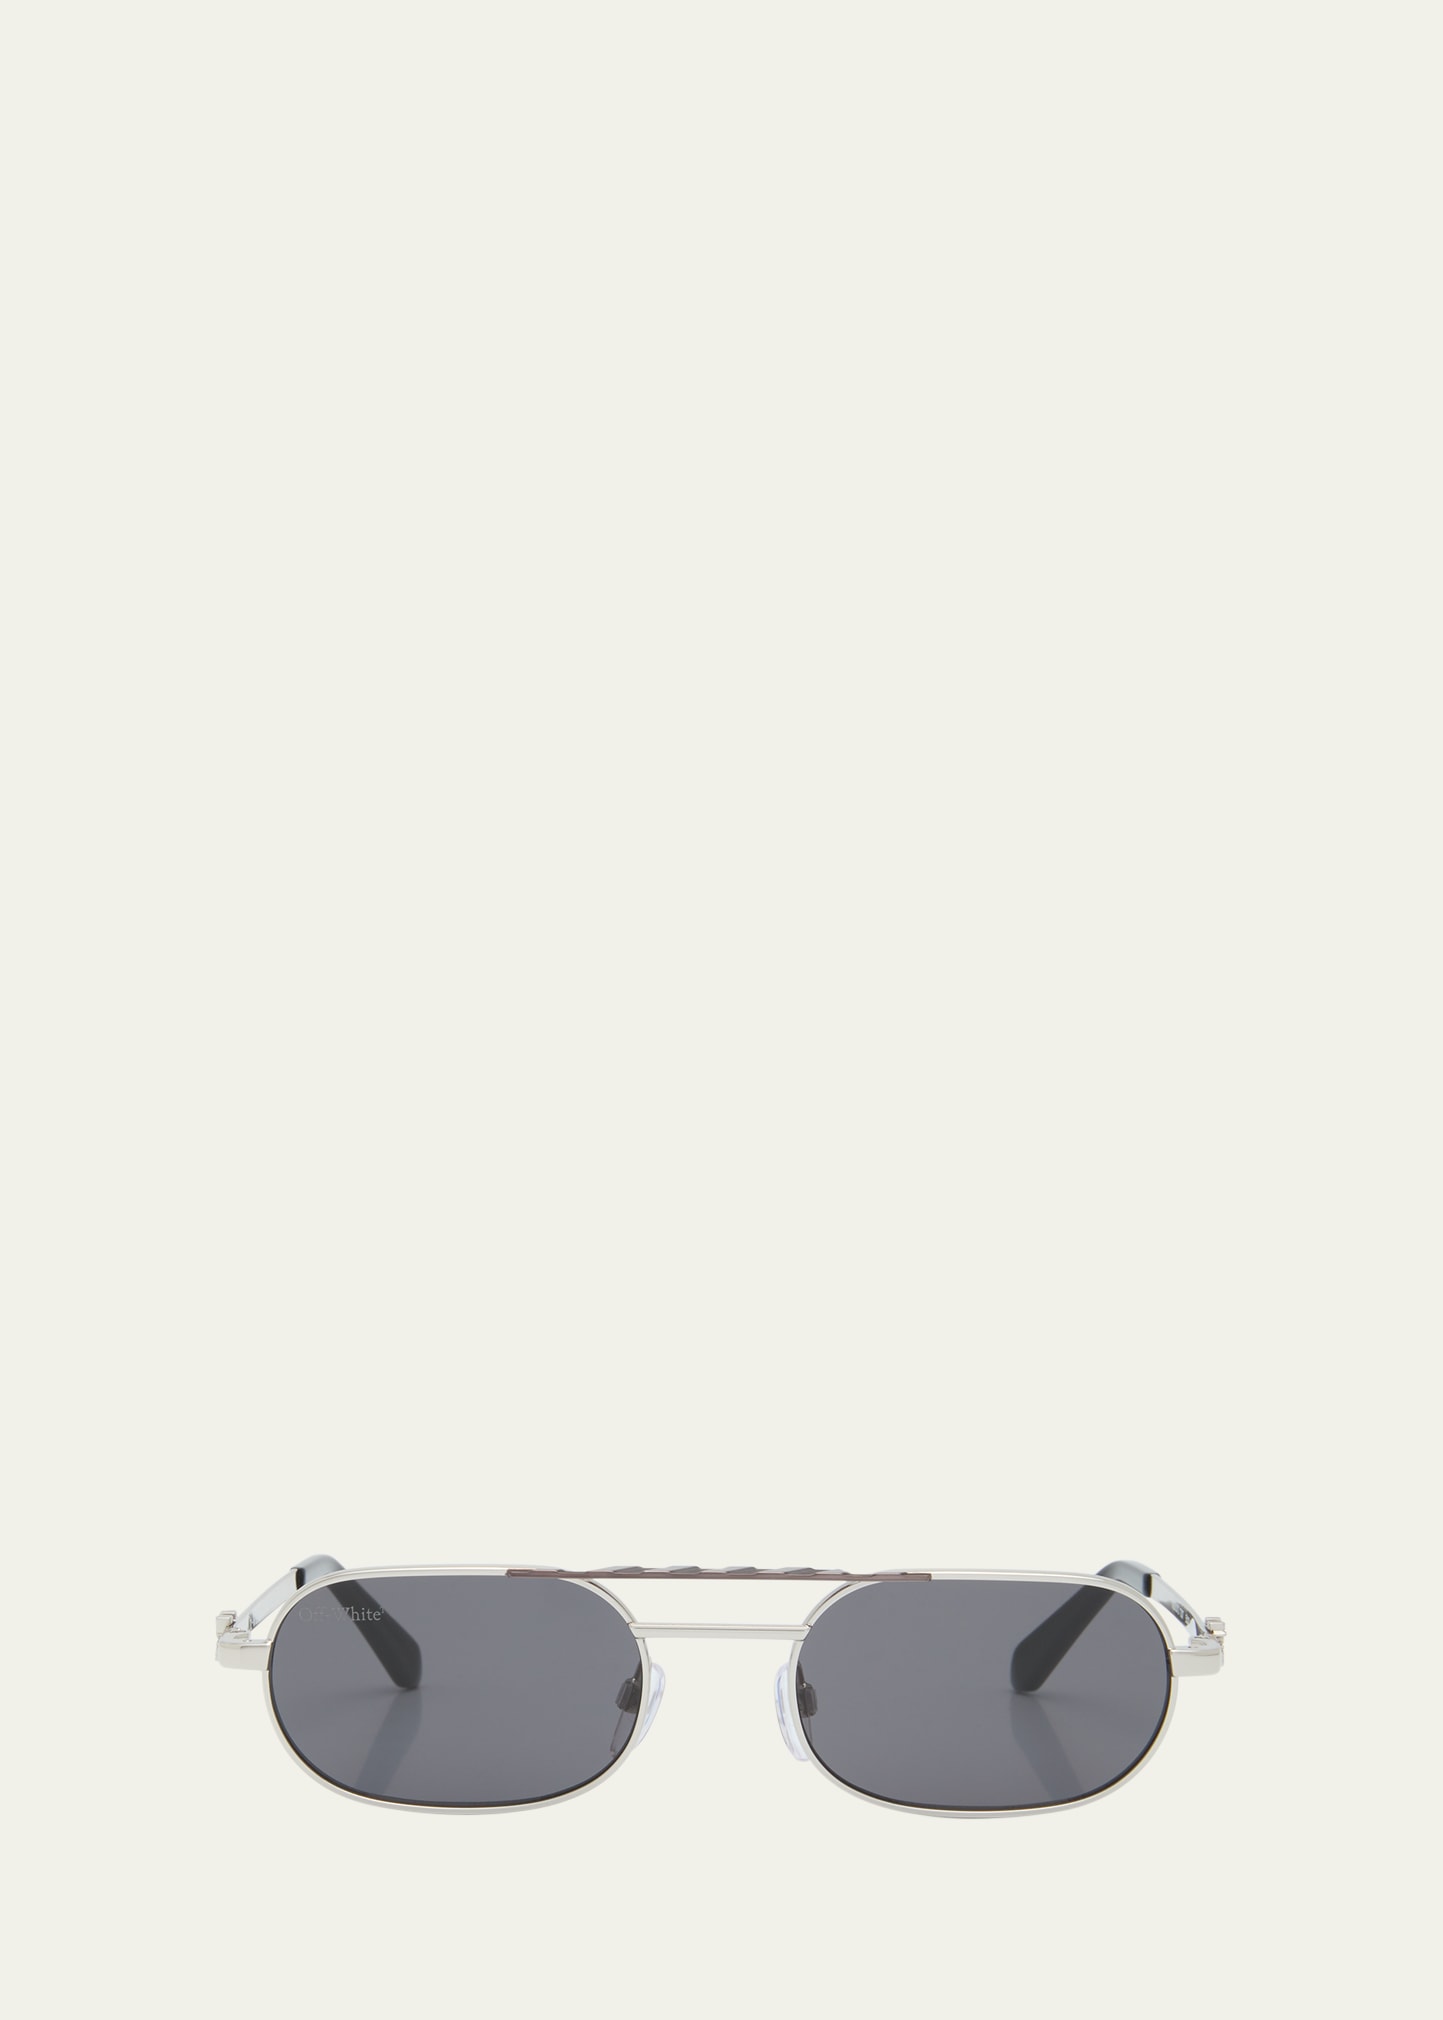 OFF-WHITE Sunglasses for Men